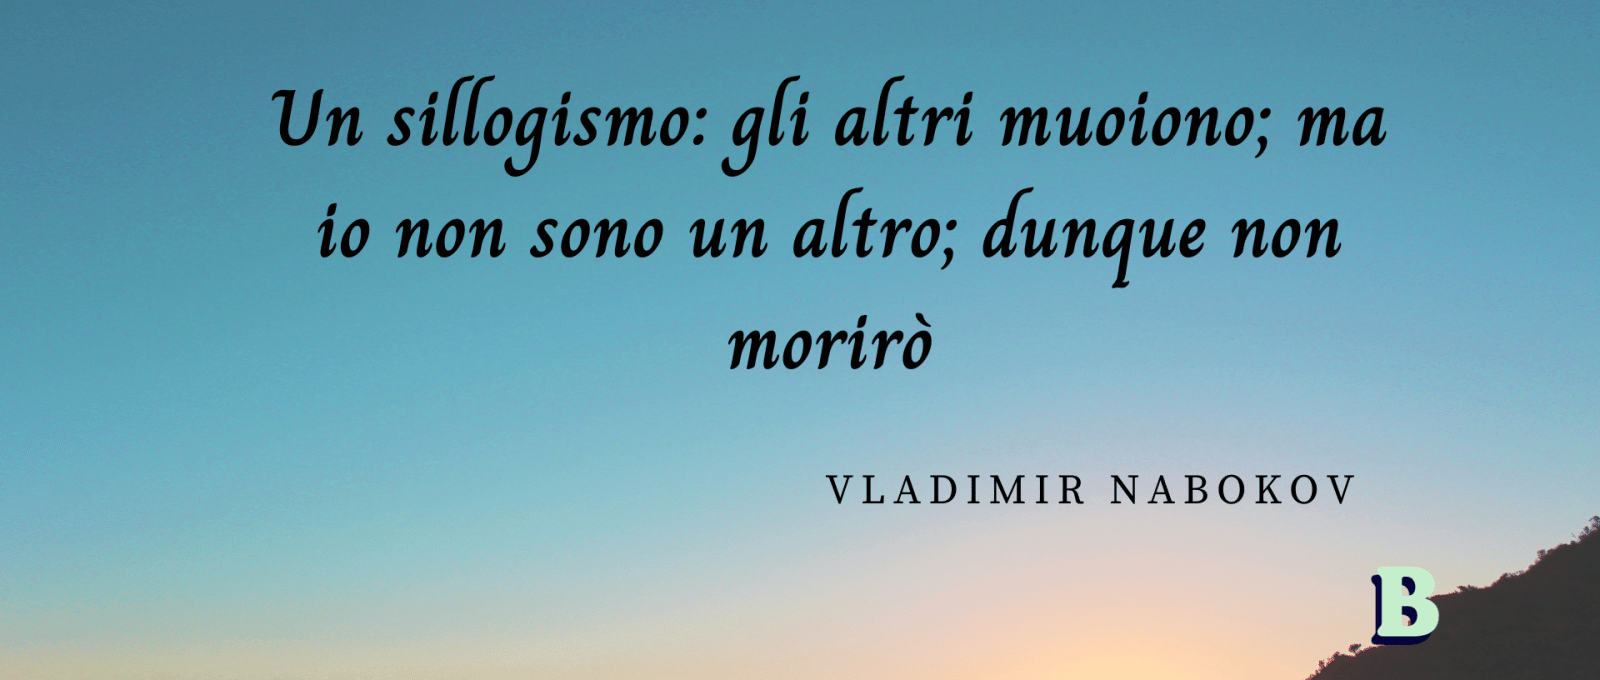 frasi Vladimir Nabokov